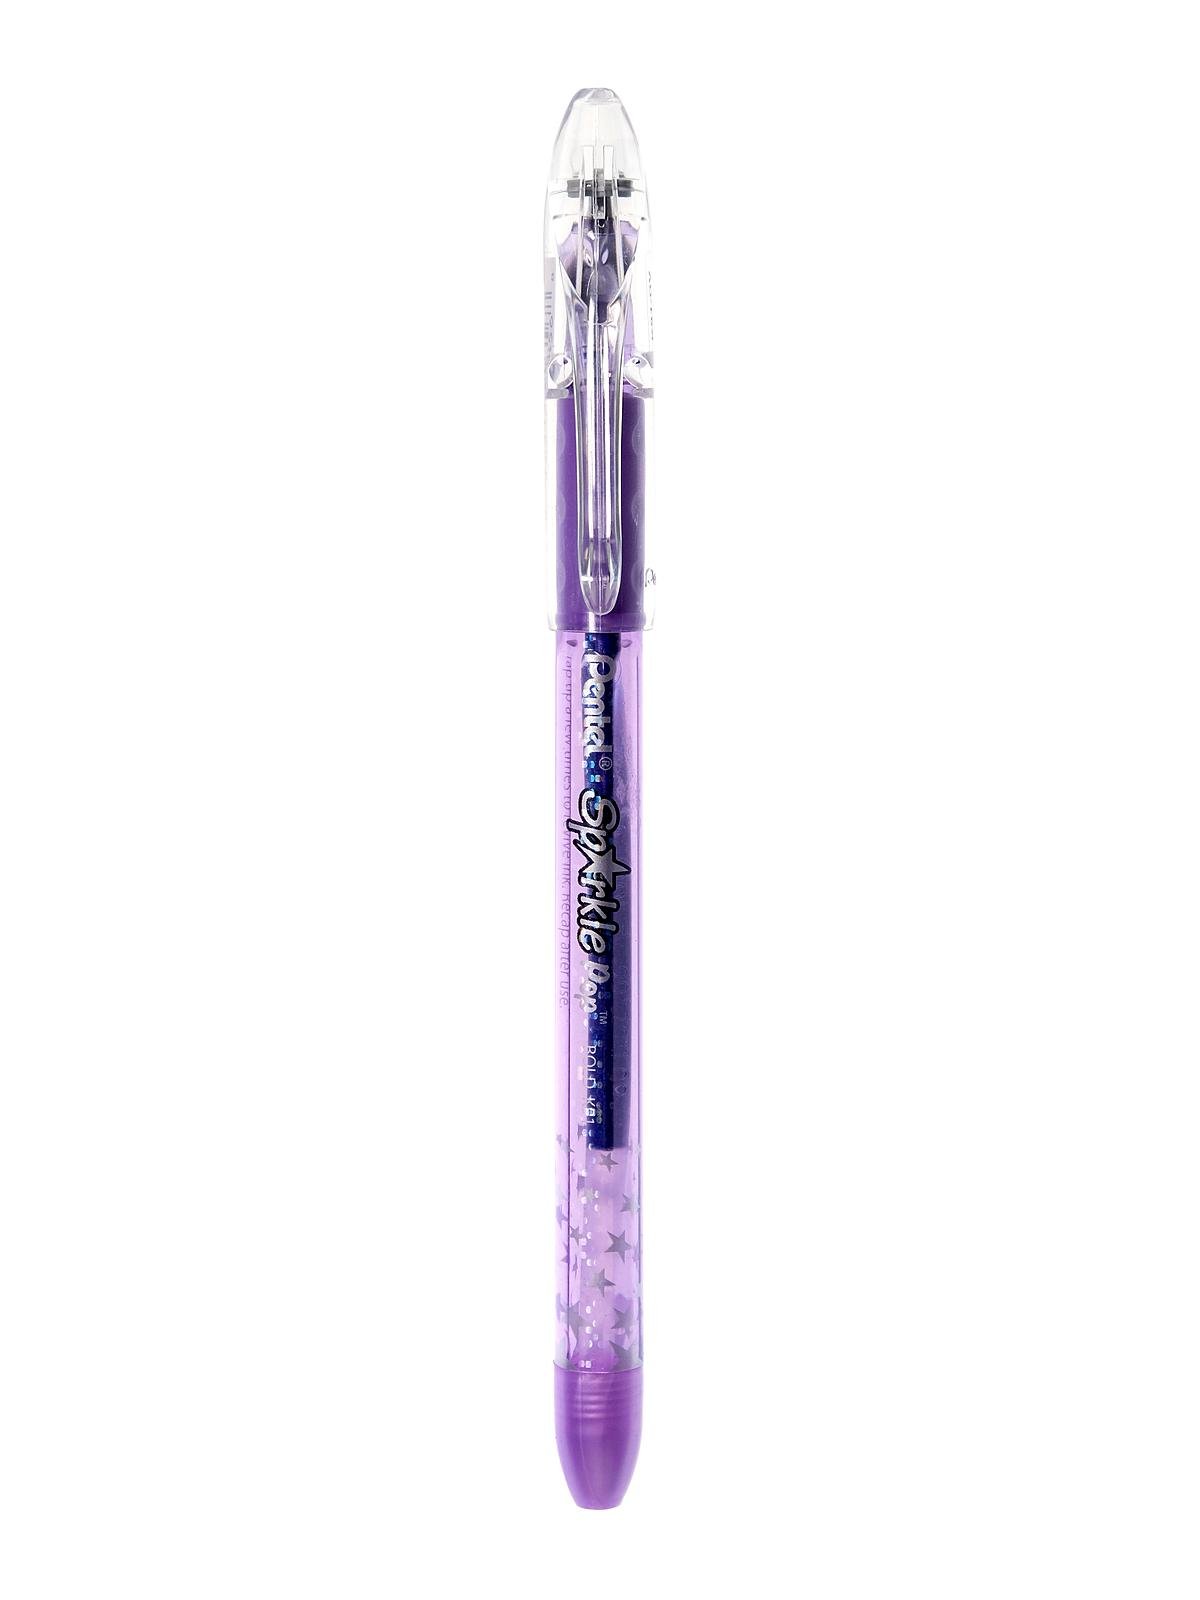 Sparkle Pop Metallic Gel Pens violet blue, 0.8 mm